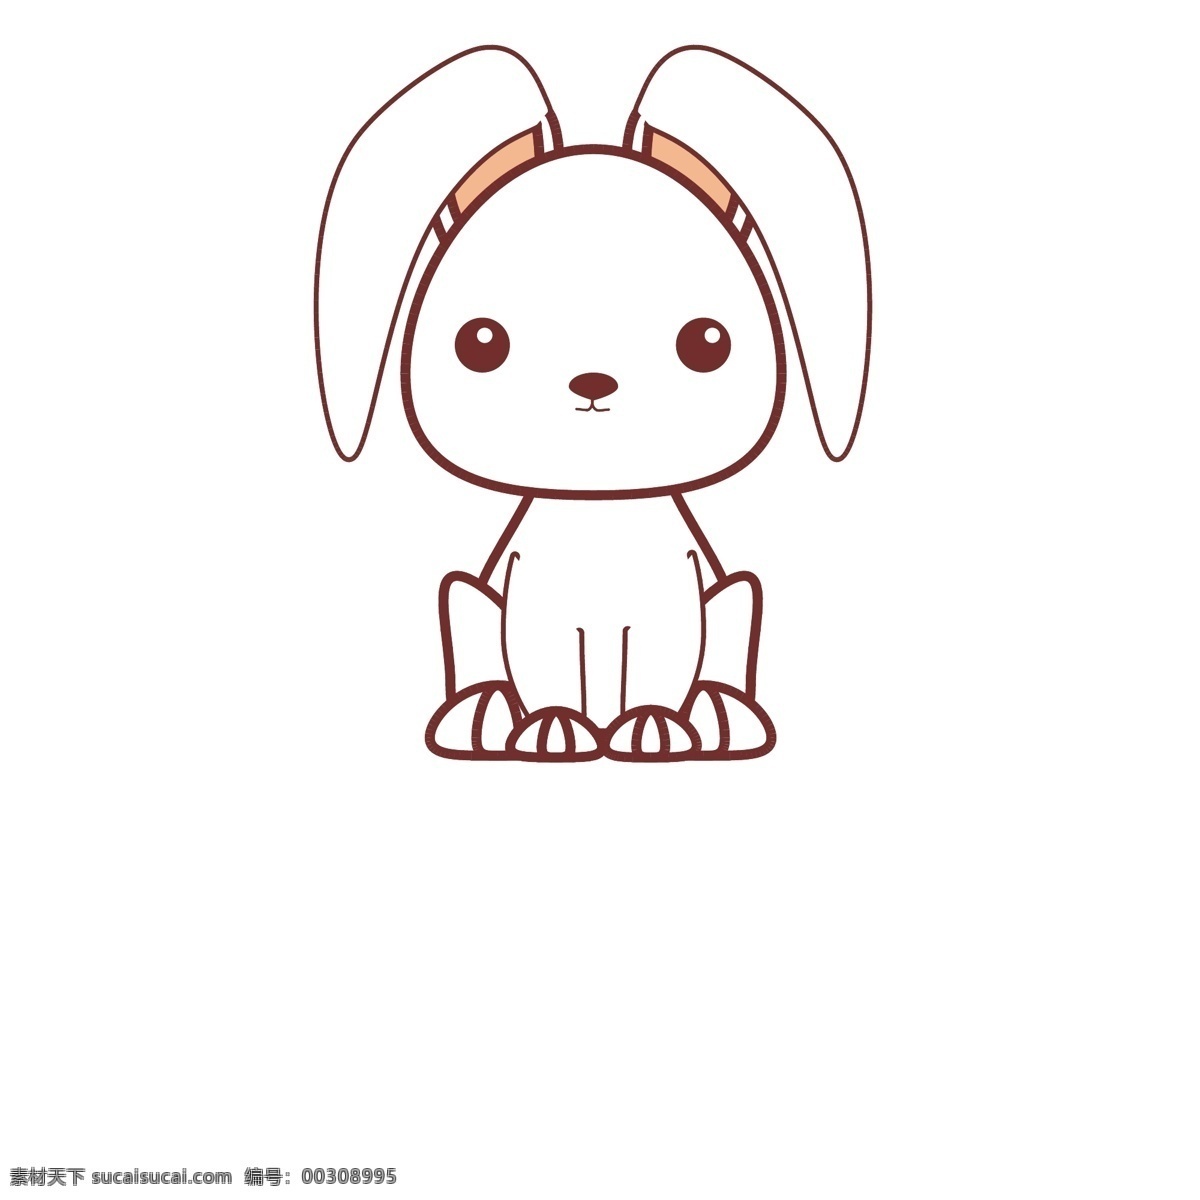 小兔子插画 小兔子 插画 卡通 扁平 动物